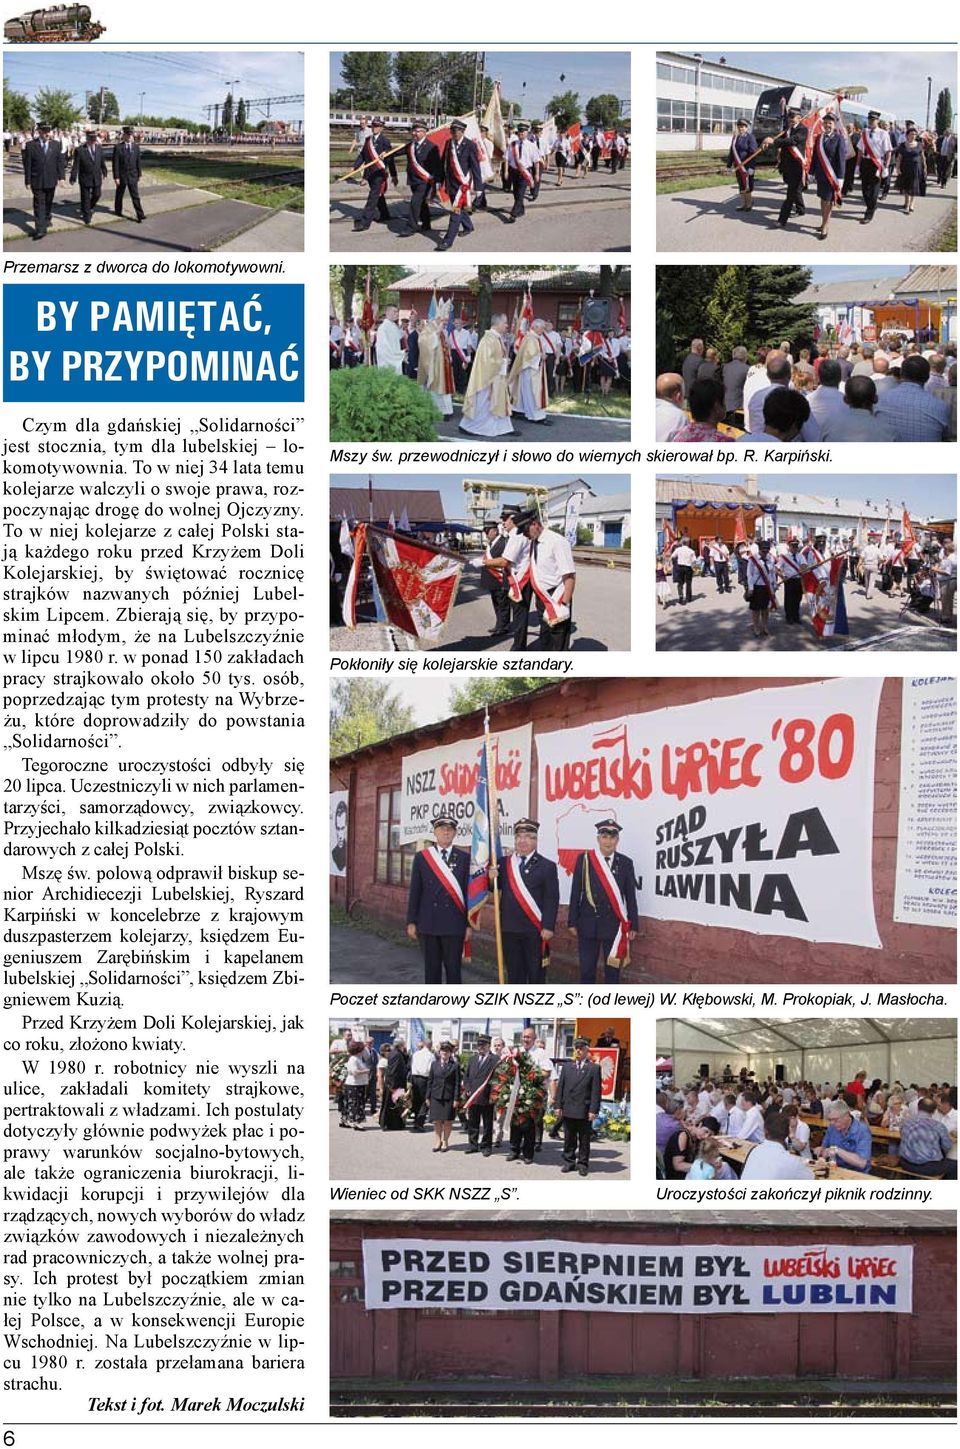 To w niej kolejarze z całej Polski stają każdego roku przed Krzyżem Doli Kolejarskiej, by świętować rocznicę strajków nazwanych później Lubelskim Lipcem.